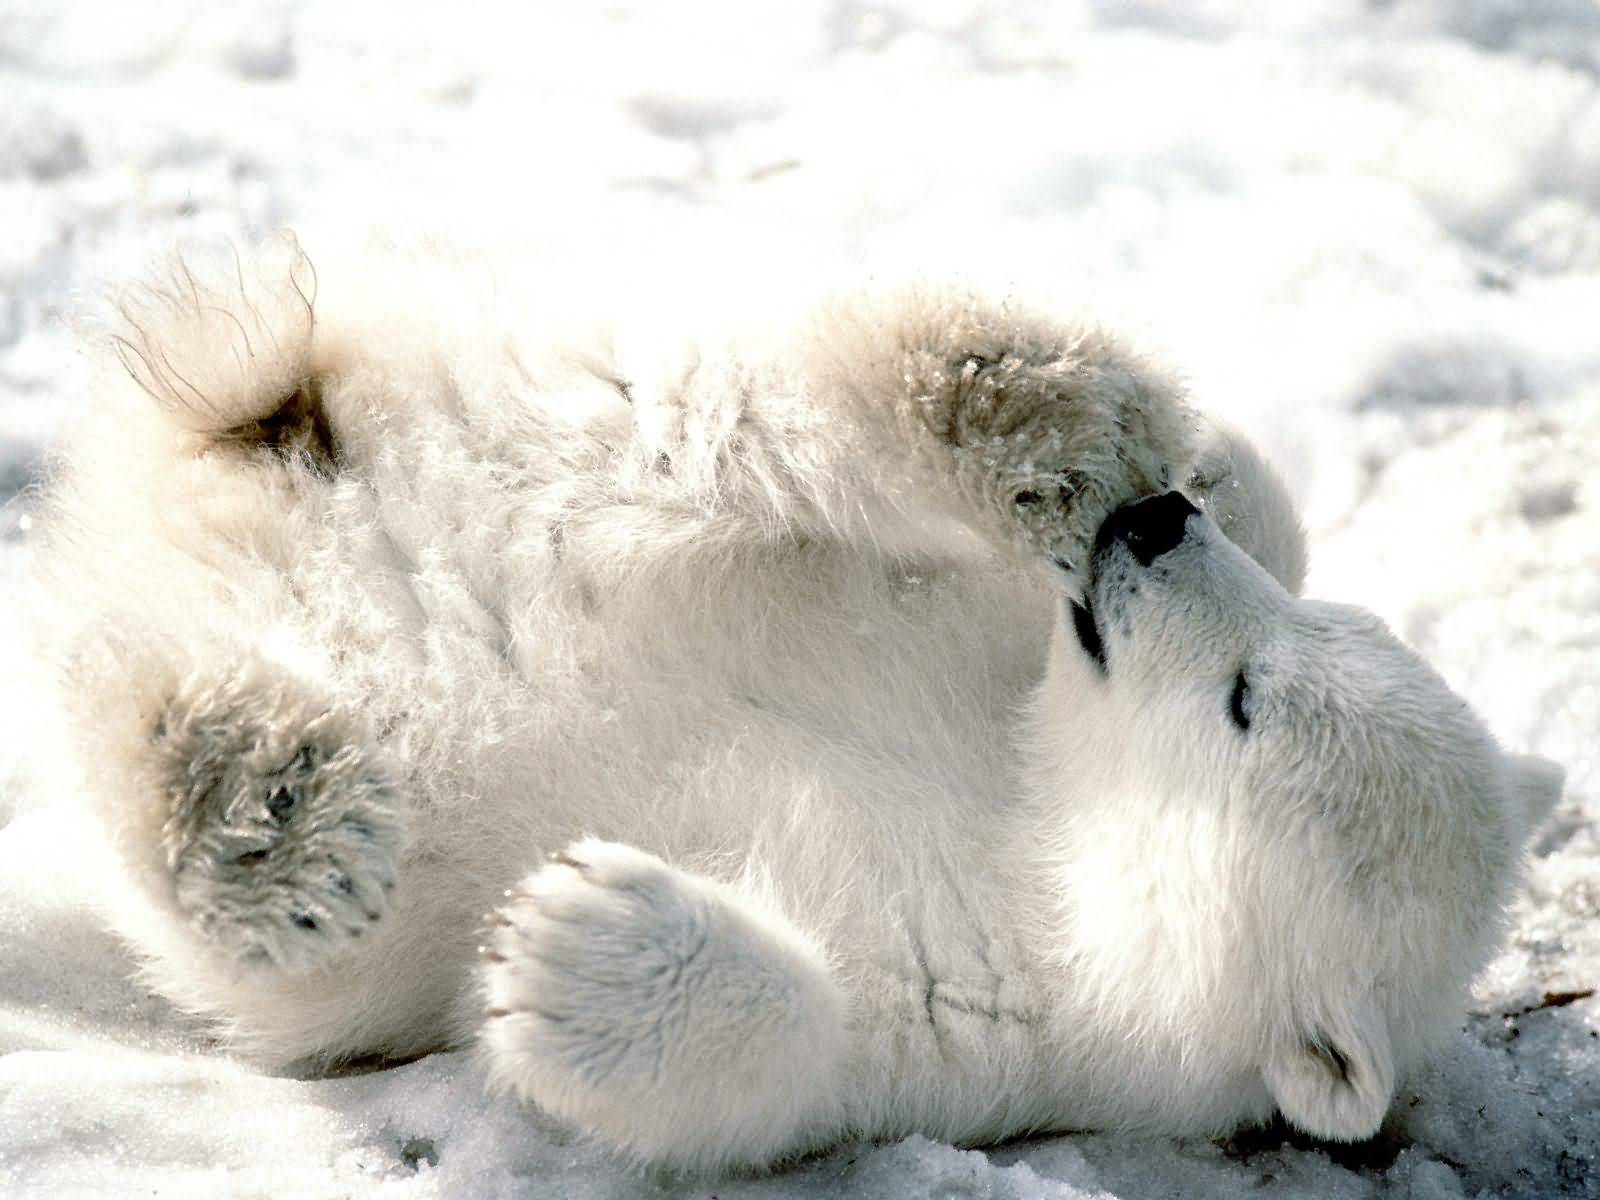 Template of a polar bear